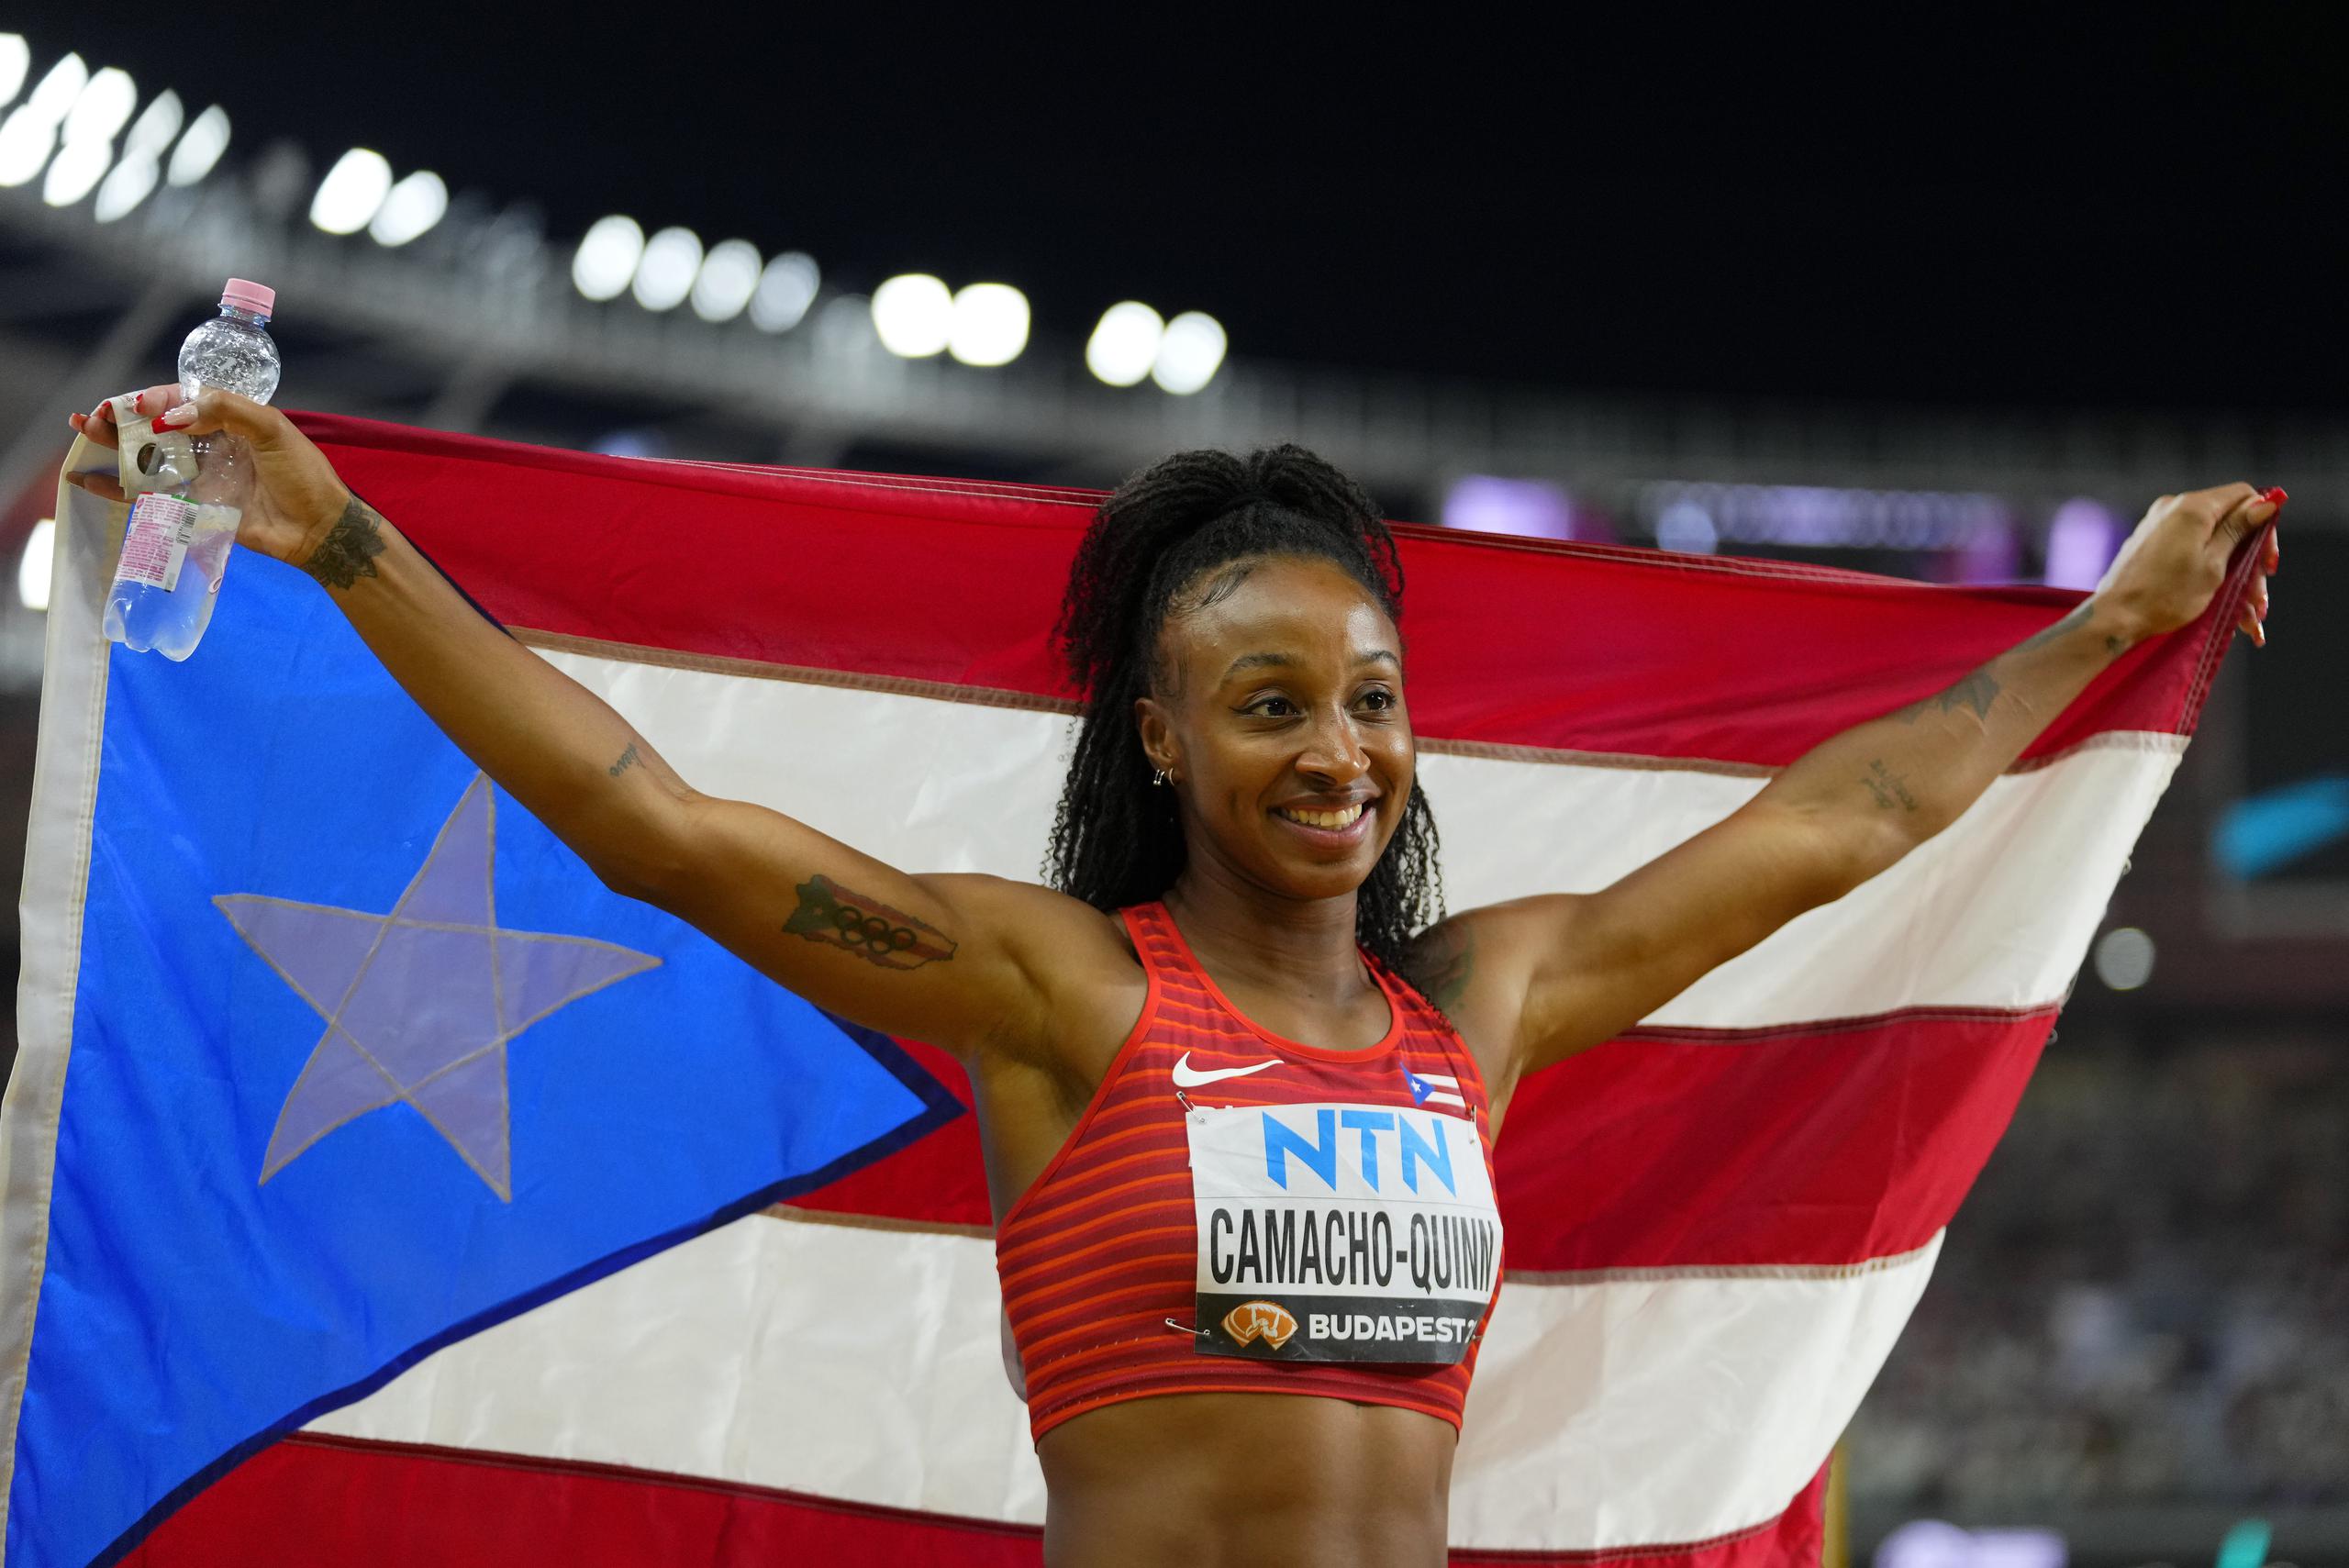 Jasmine Camacho Quinn, aquí con la bandera de Puerto Rico luego de una carrera, es una obvia candidata para abanderada boricua en los Juegos Olímpicos.